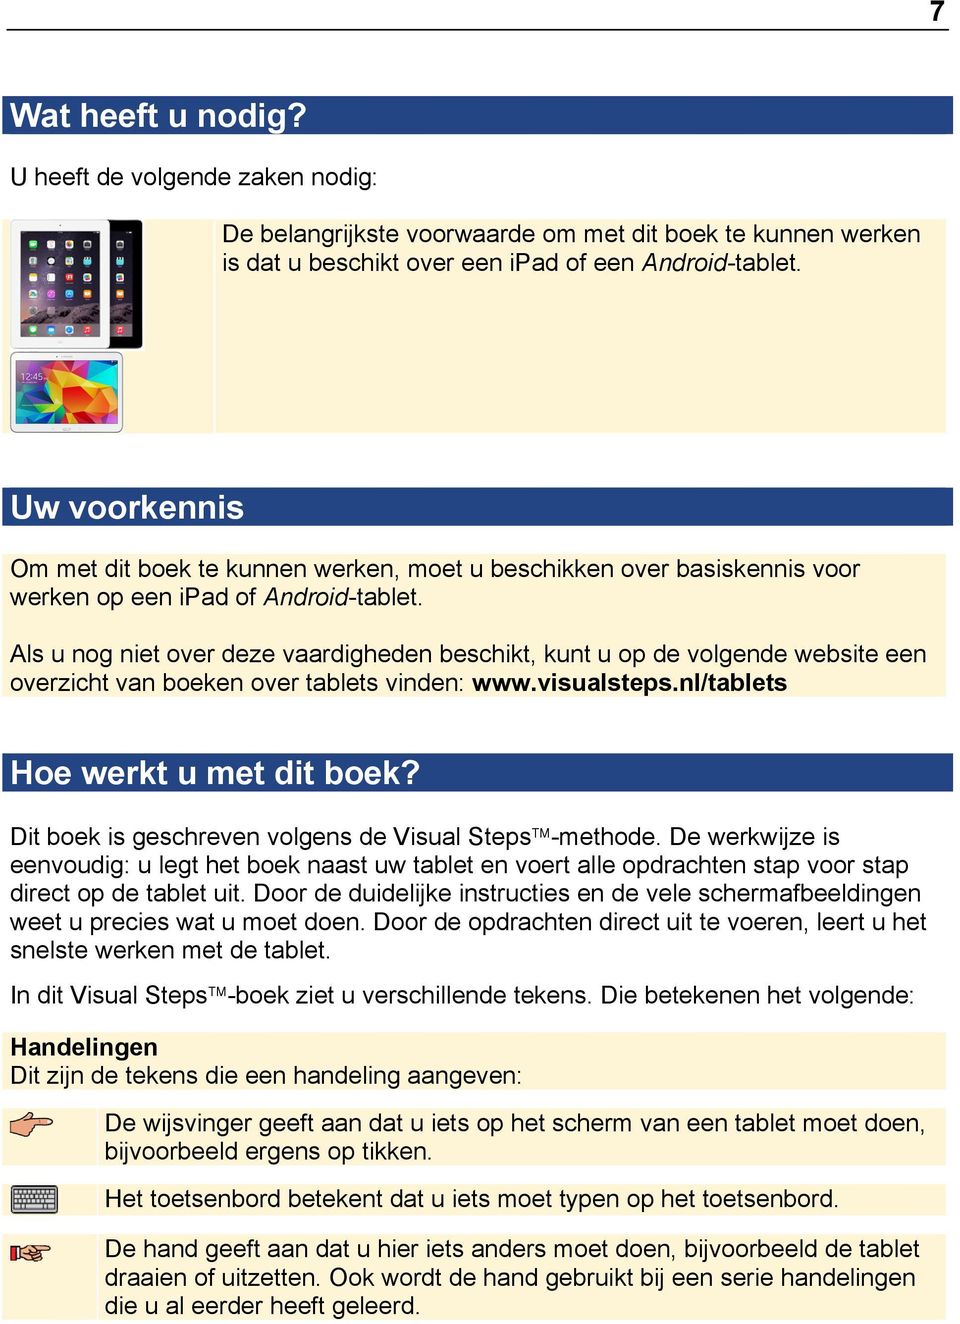 Als u nog niet over deze vaardigheden beschikt, kunt u op de volgende website een overzicht van boeken over tablets vinden: www.visualsteps.nl/tablets Hoe werkt u met dit boek?